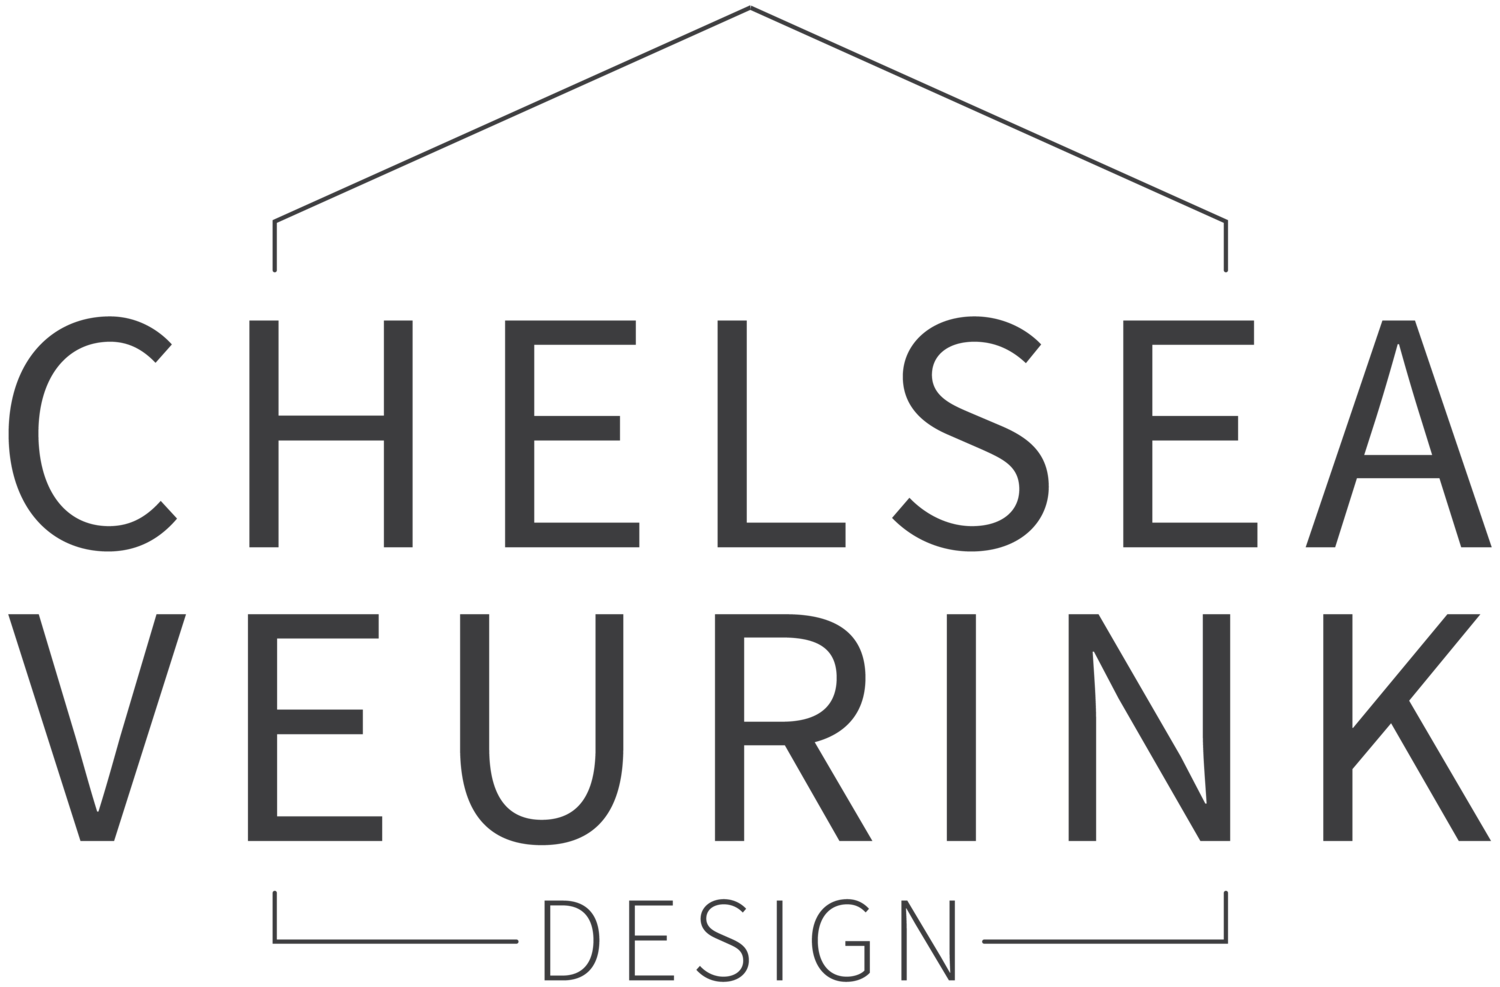 Chelsea Veurink Design